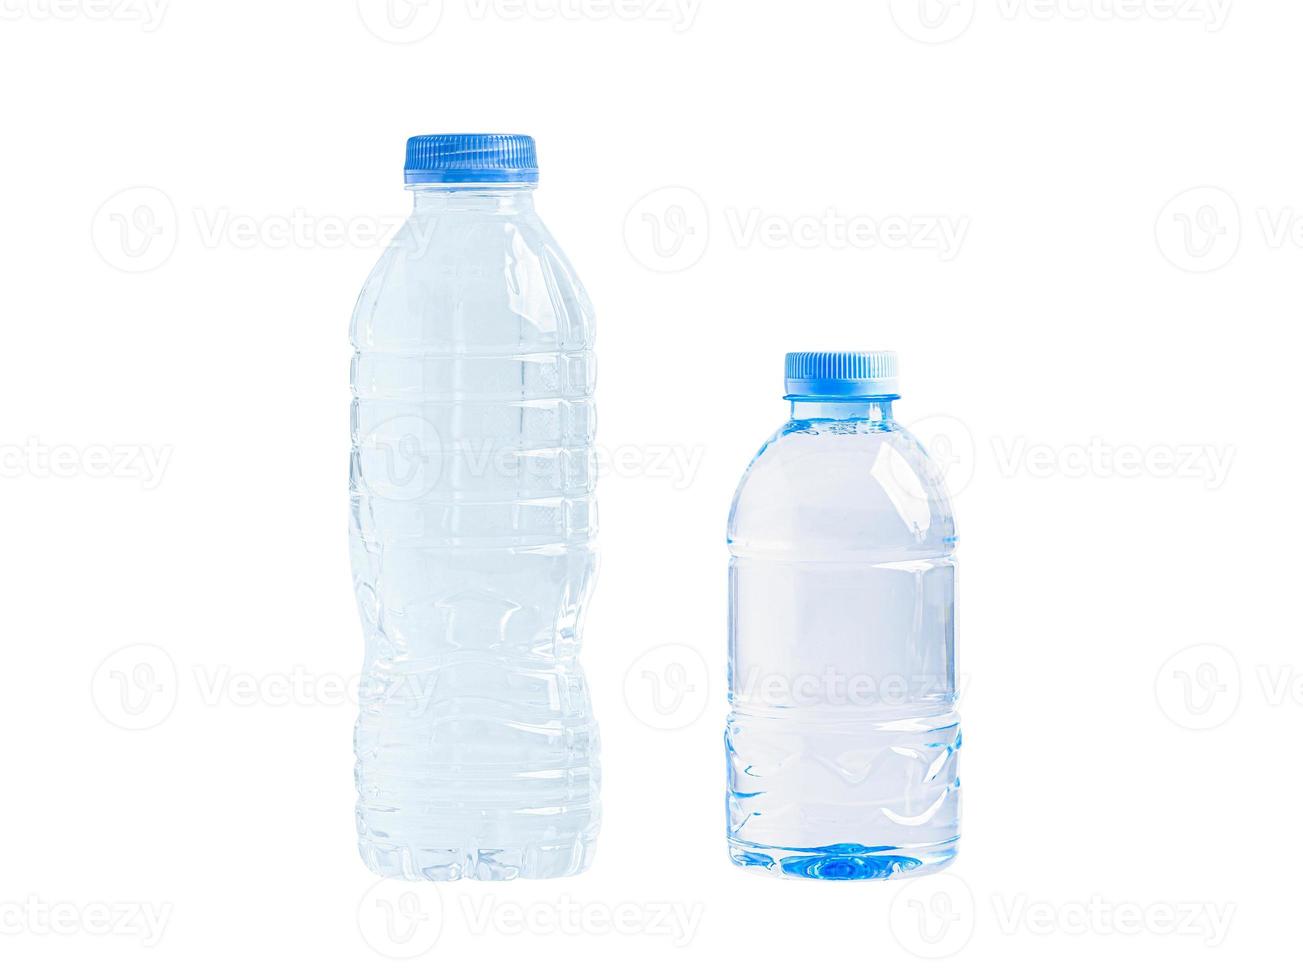 plast vatten flaska isolerat på vit bakgrund, mineral, friska begrepp. foto